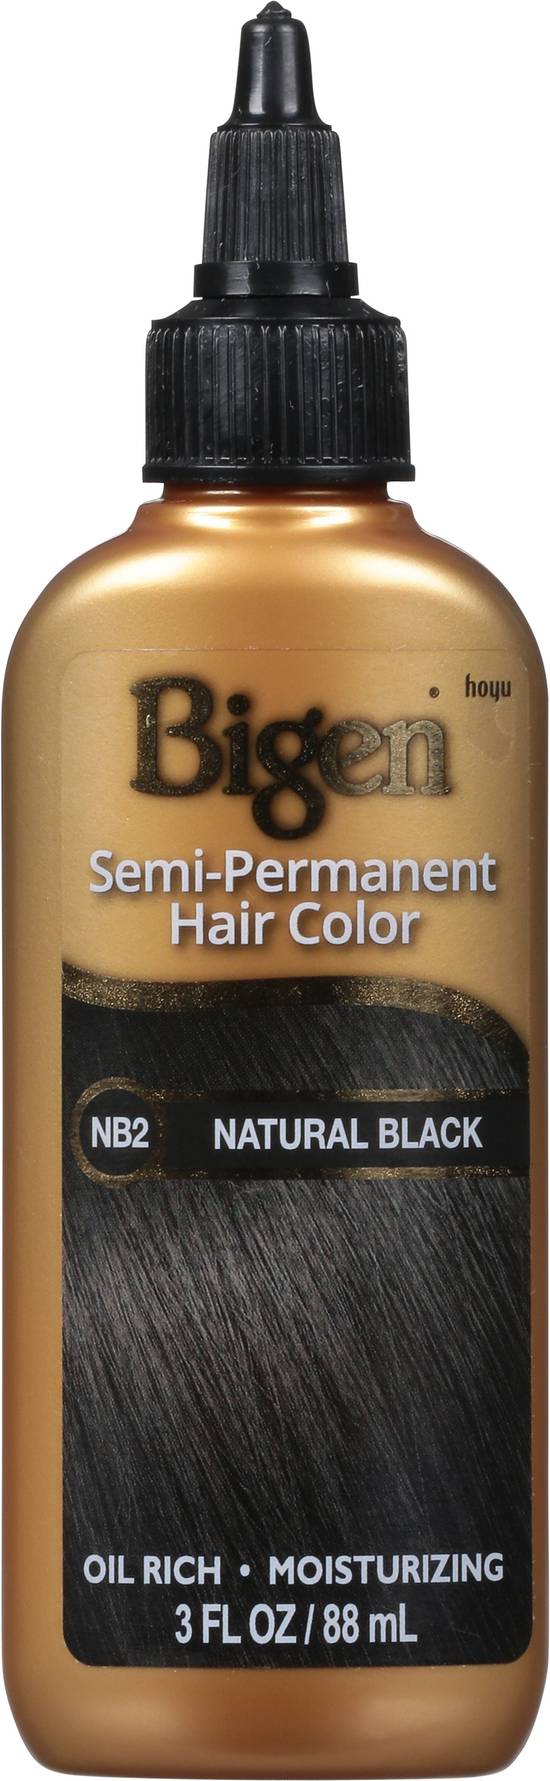 Bigen Semi-Permanent Hair Color Natural Black Nb2